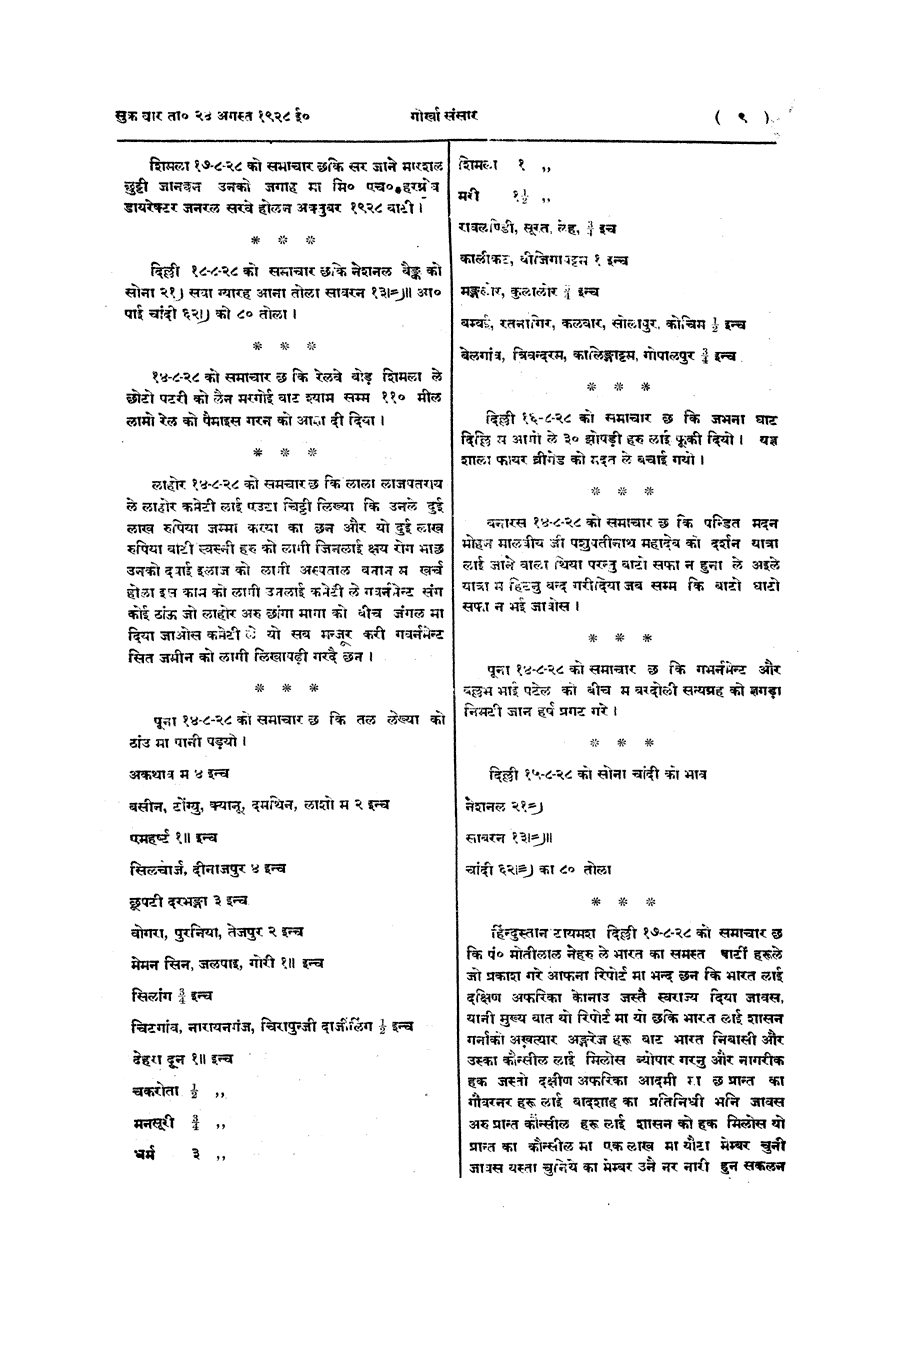 Gorkha Sansar, 24 Aug 1928, page 9